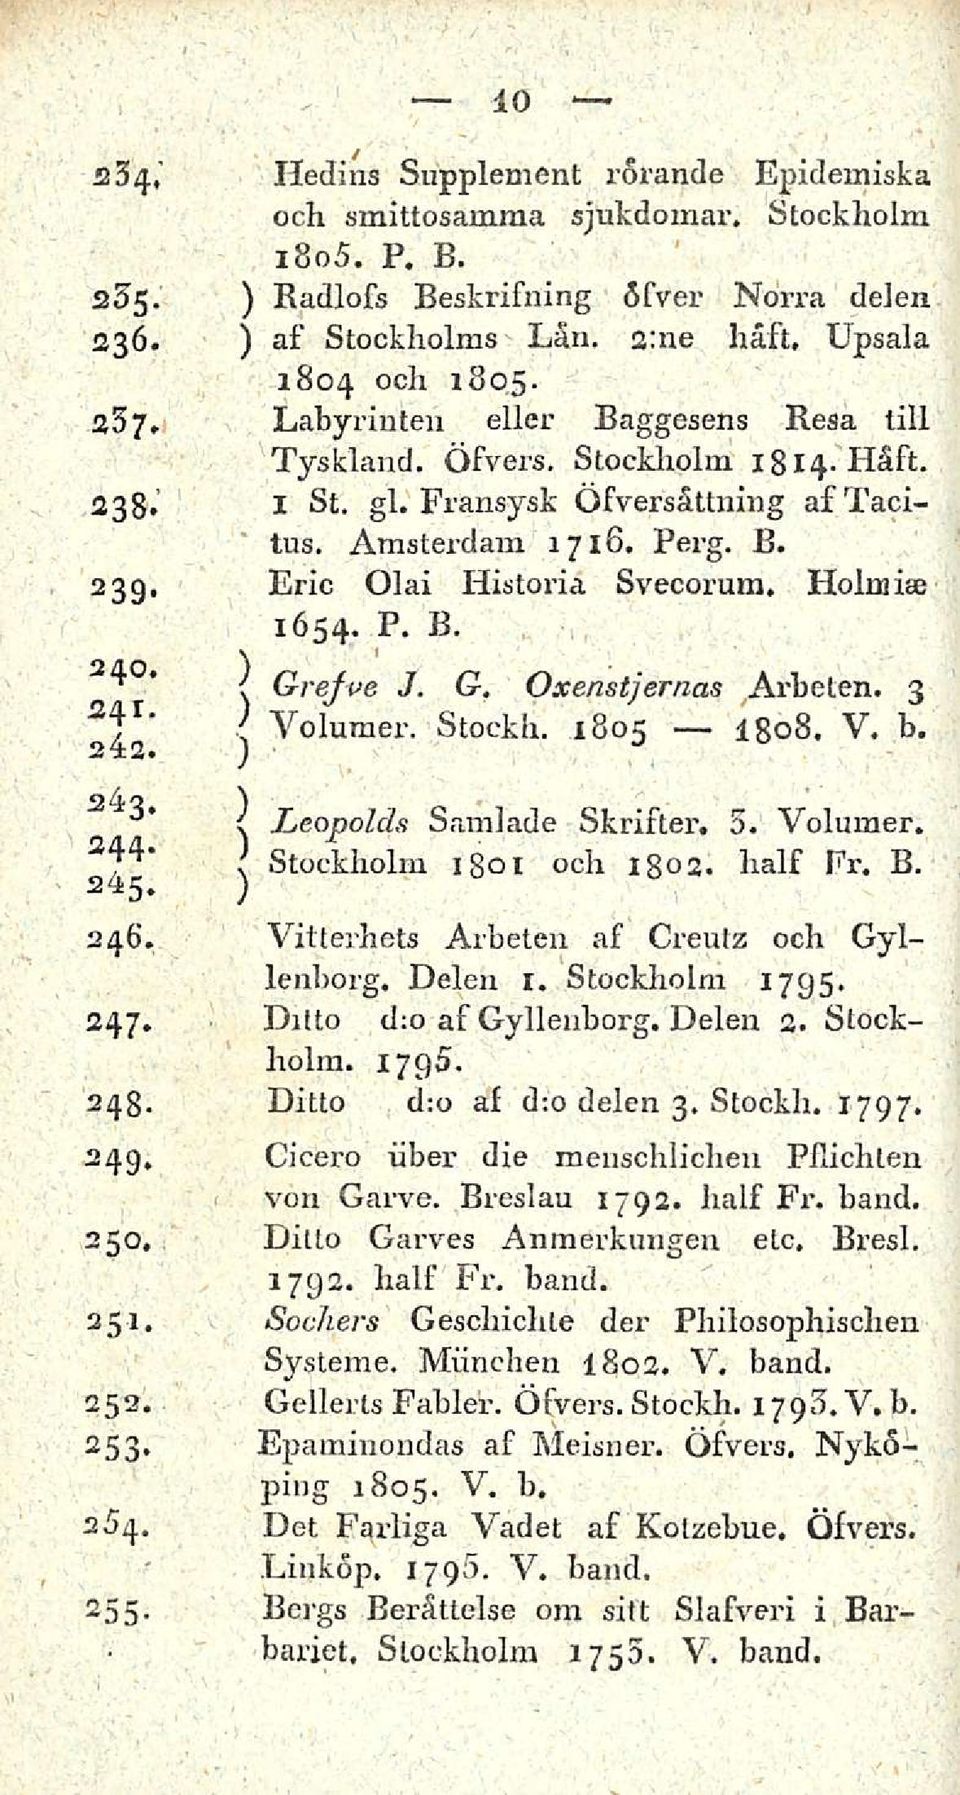 Holm ia) 1654. P. B. 240. } Grejve J. G. Oxenstjernas Arbelen. 3 2,^1. j Yolumer. Stockh. 1805 V. b. 242. a4s. Leopolds Samlade Skrifter. 3. Volumer. S44- Stockholm 1 ot och 1802. half Fr. B. 245.